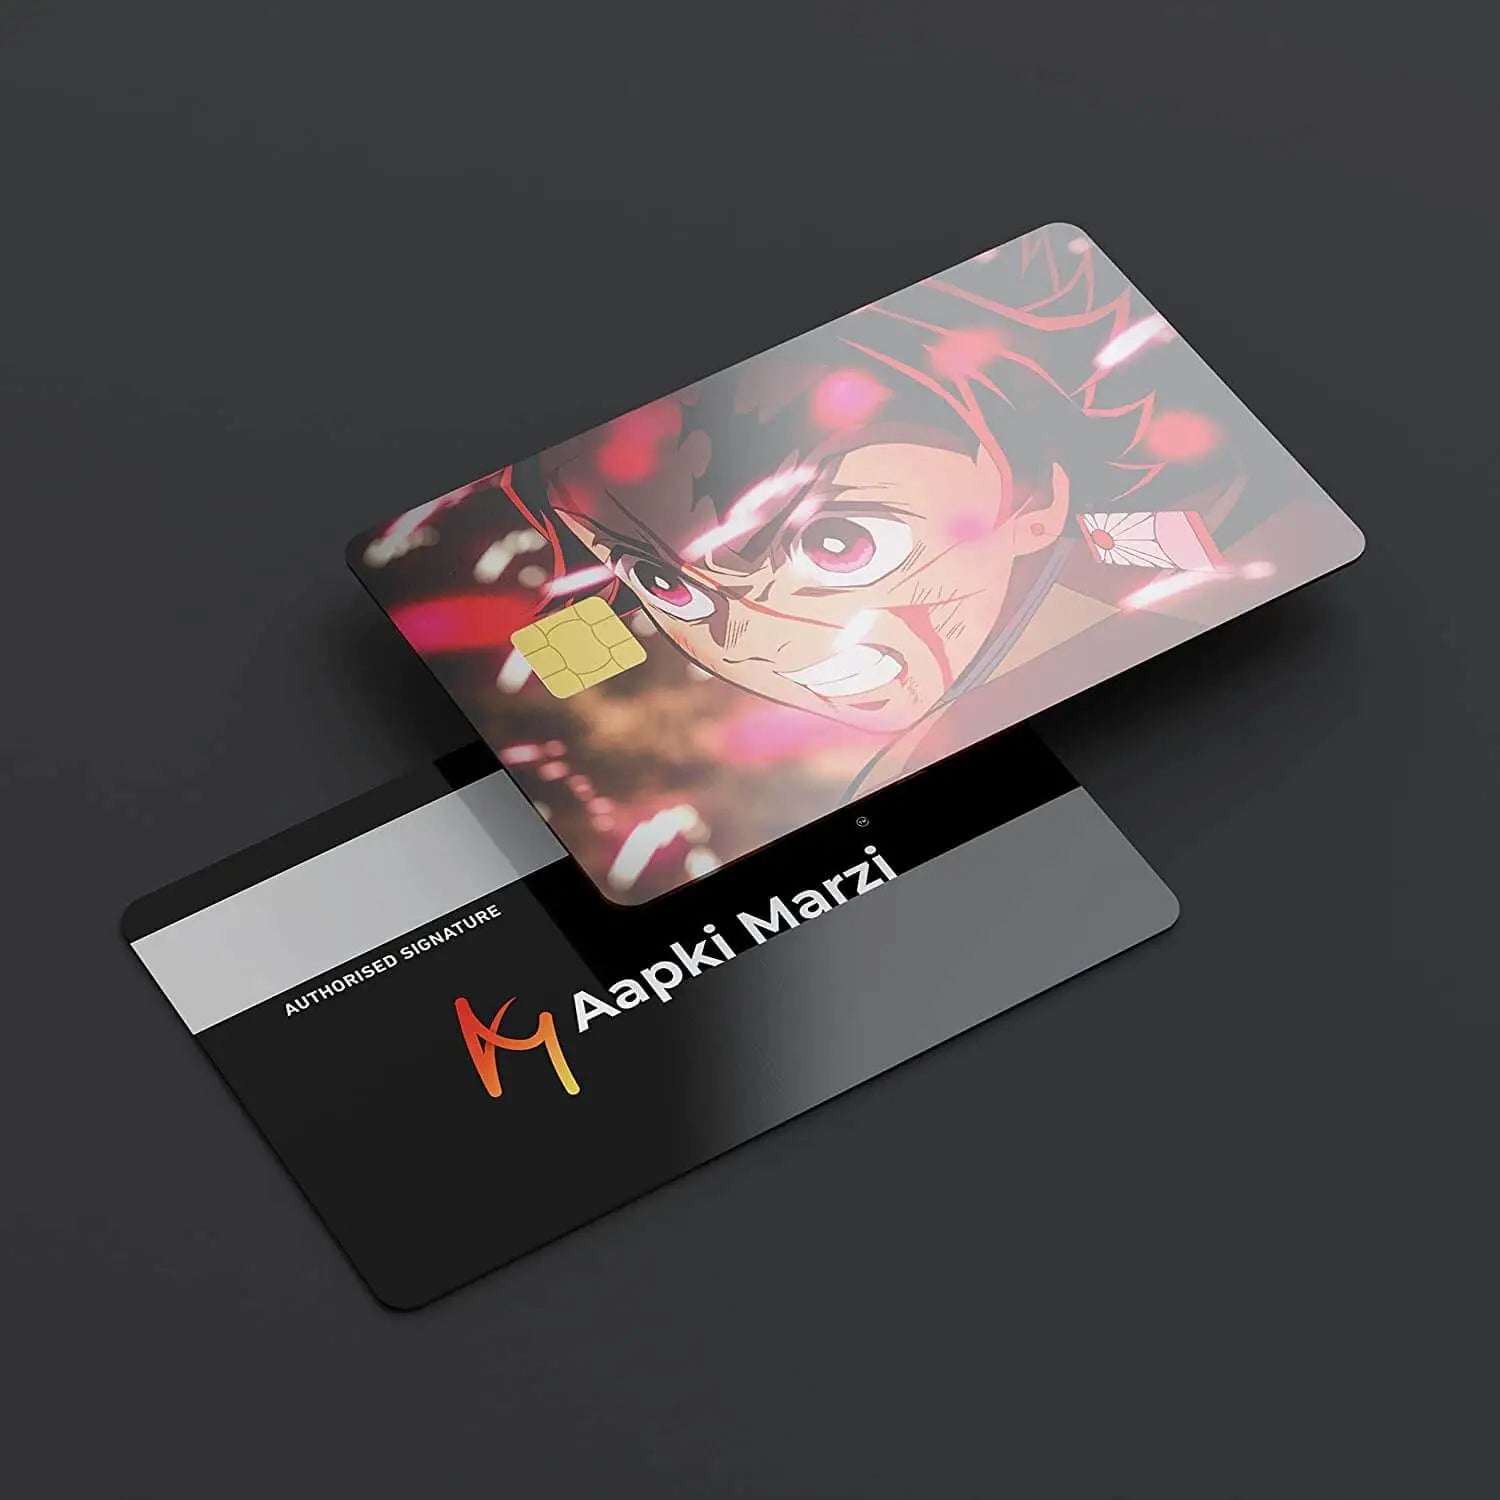 Tanjiro Kamado Angry Demons Slayer credit card skins